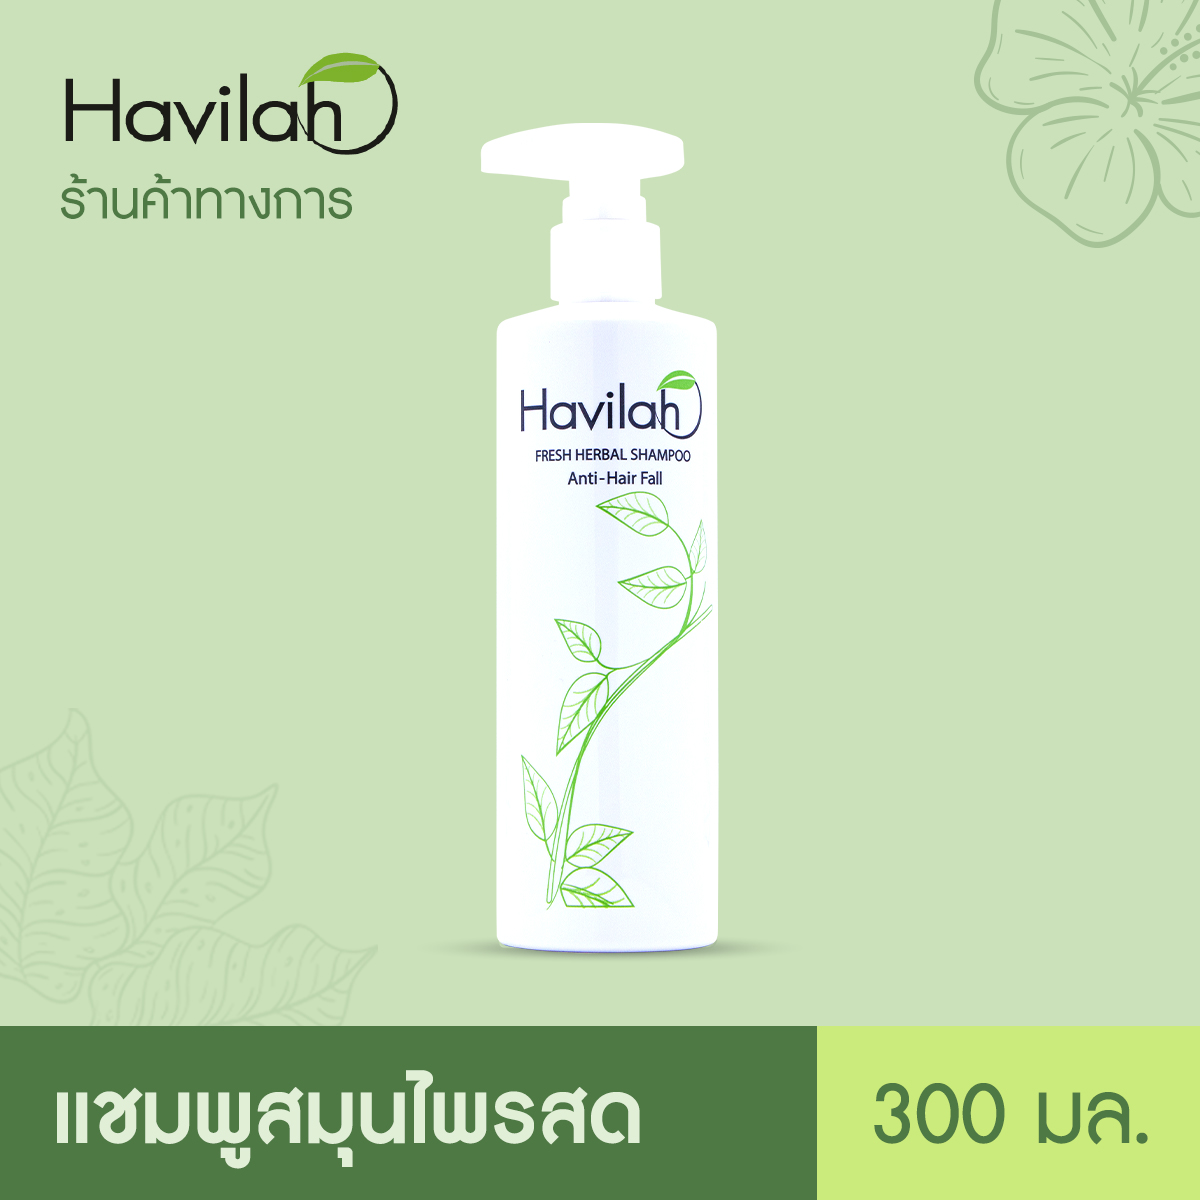 ซื้อที่ไหน ฮาวิล่าห์ (Havilah) แชมพูแก้ผมร่วง สมุนไพรสด 300 มล. x1 l Havilah Fresh Herbal Shampoo Anti-Hair Fall 300 ml. (ส่งฟรี)